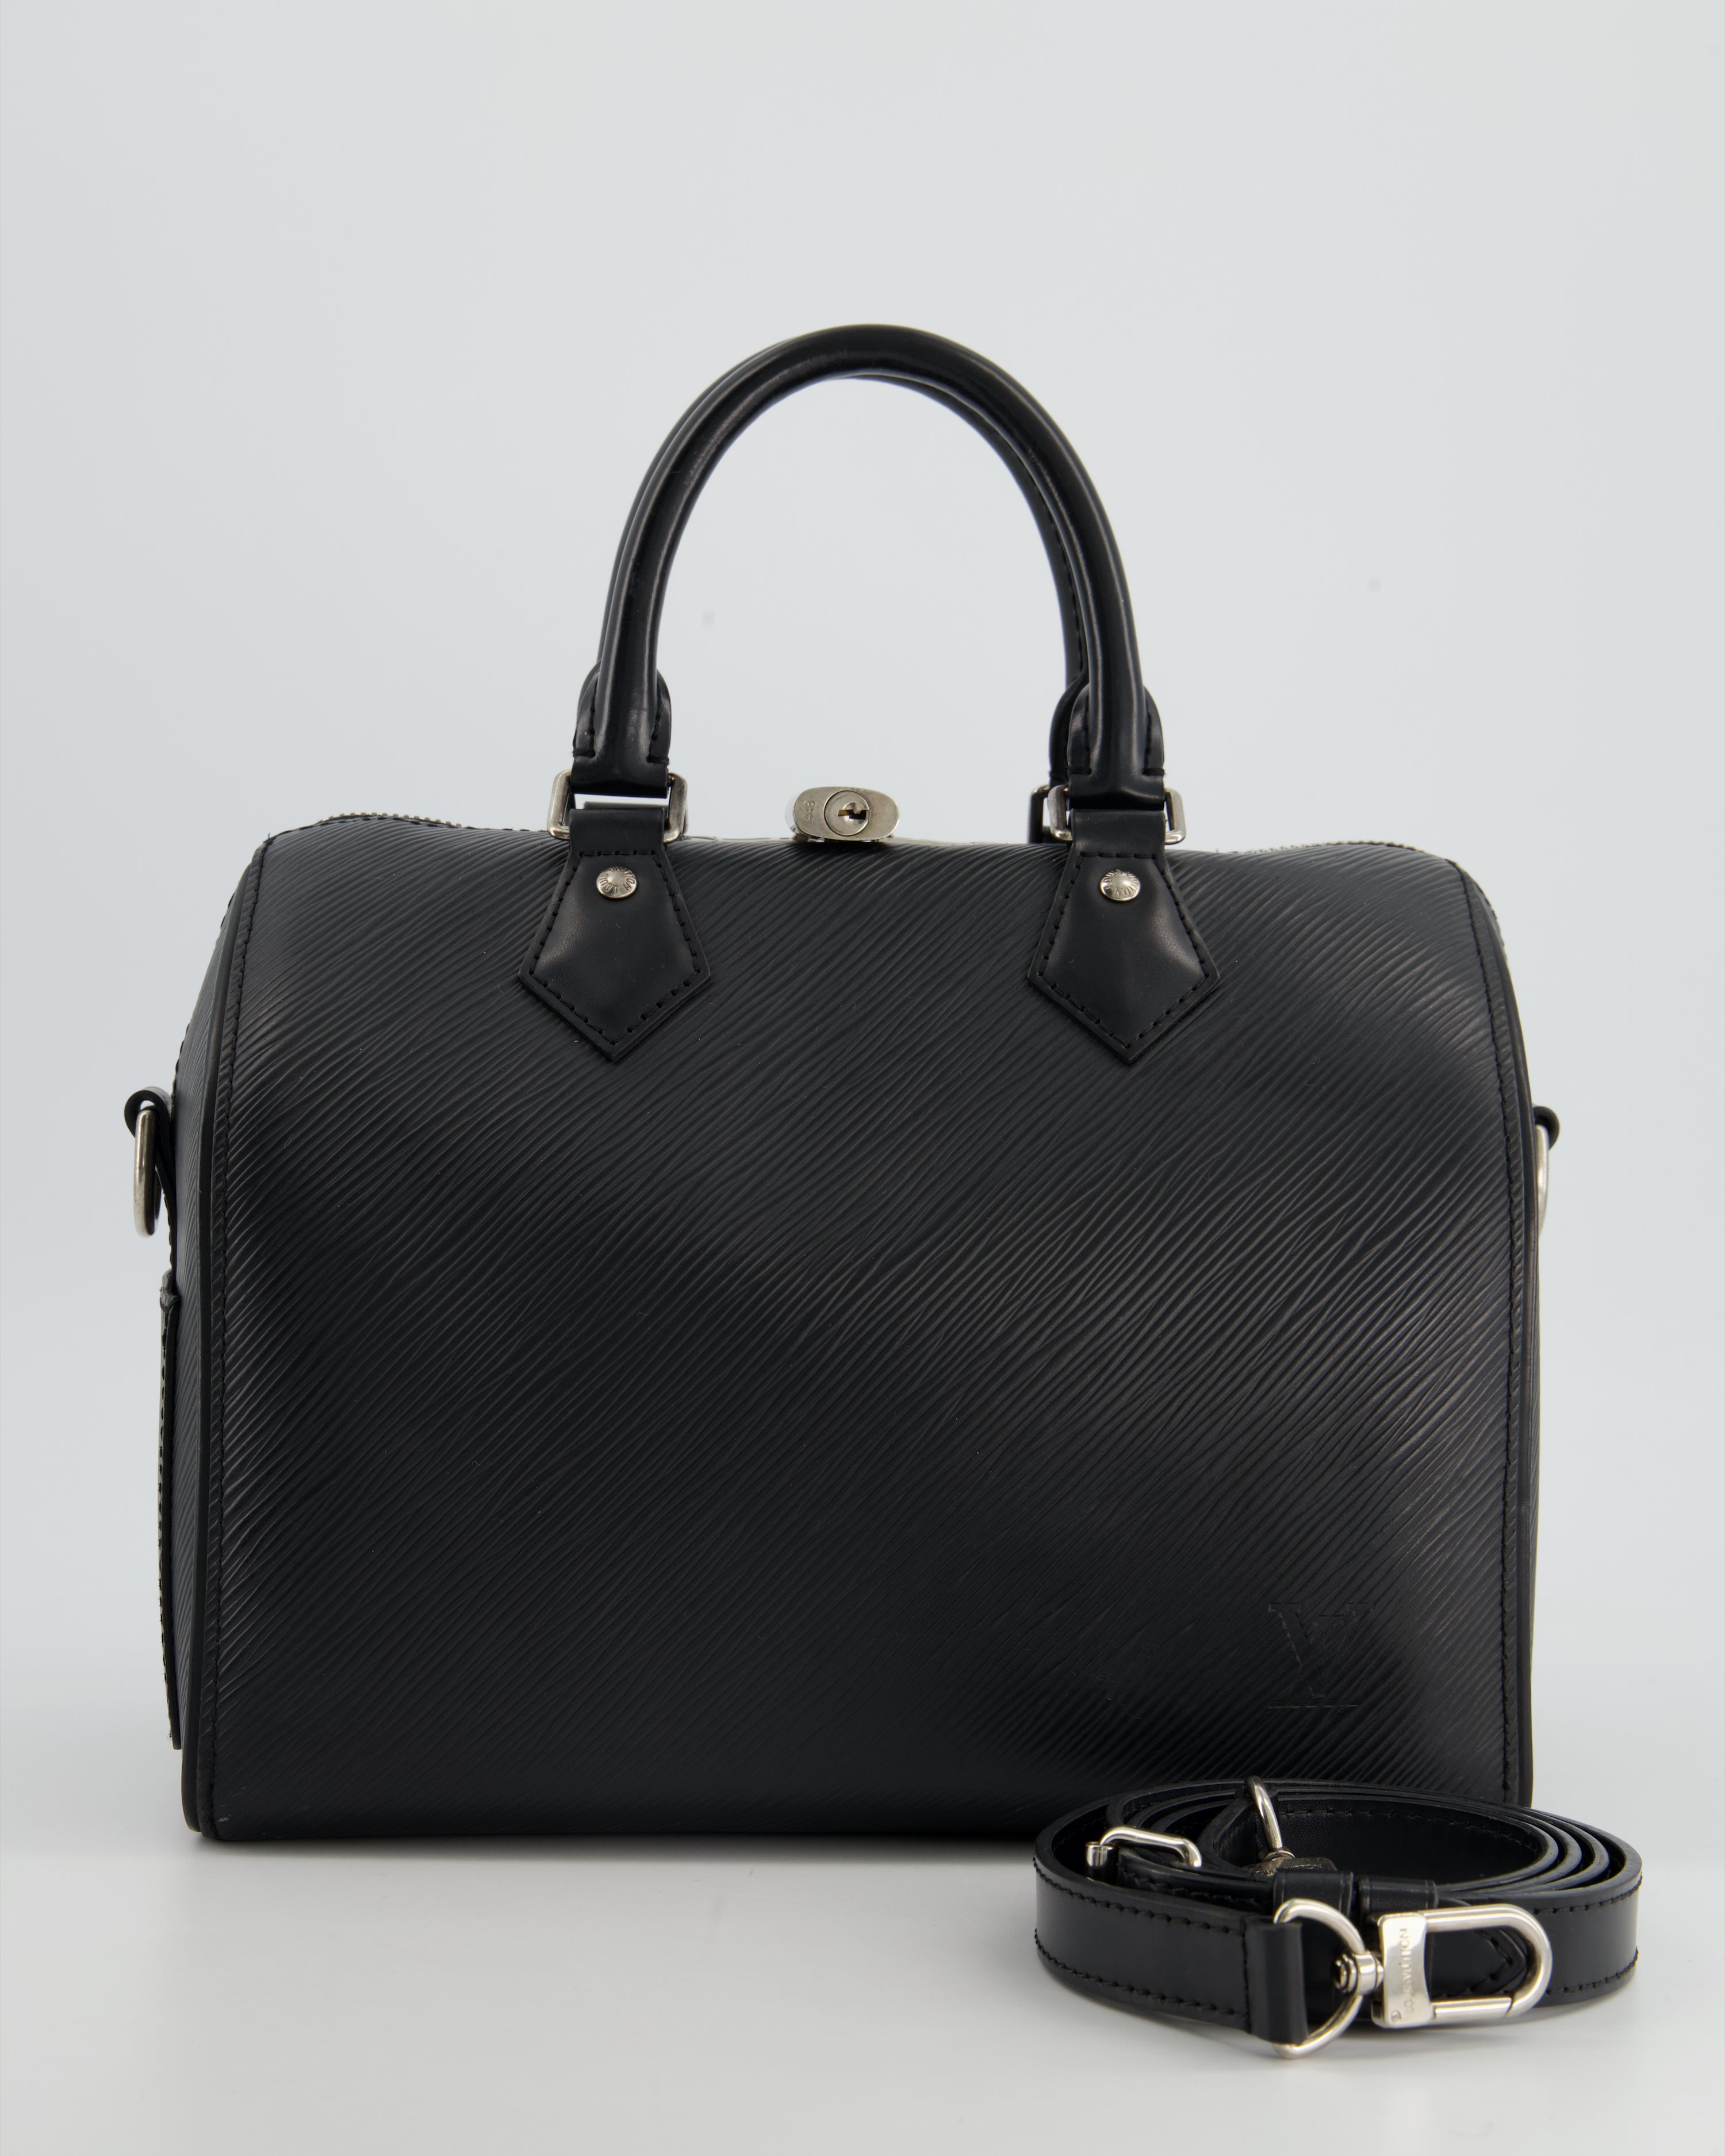 Louis Vuitton Speedy 25 in Black